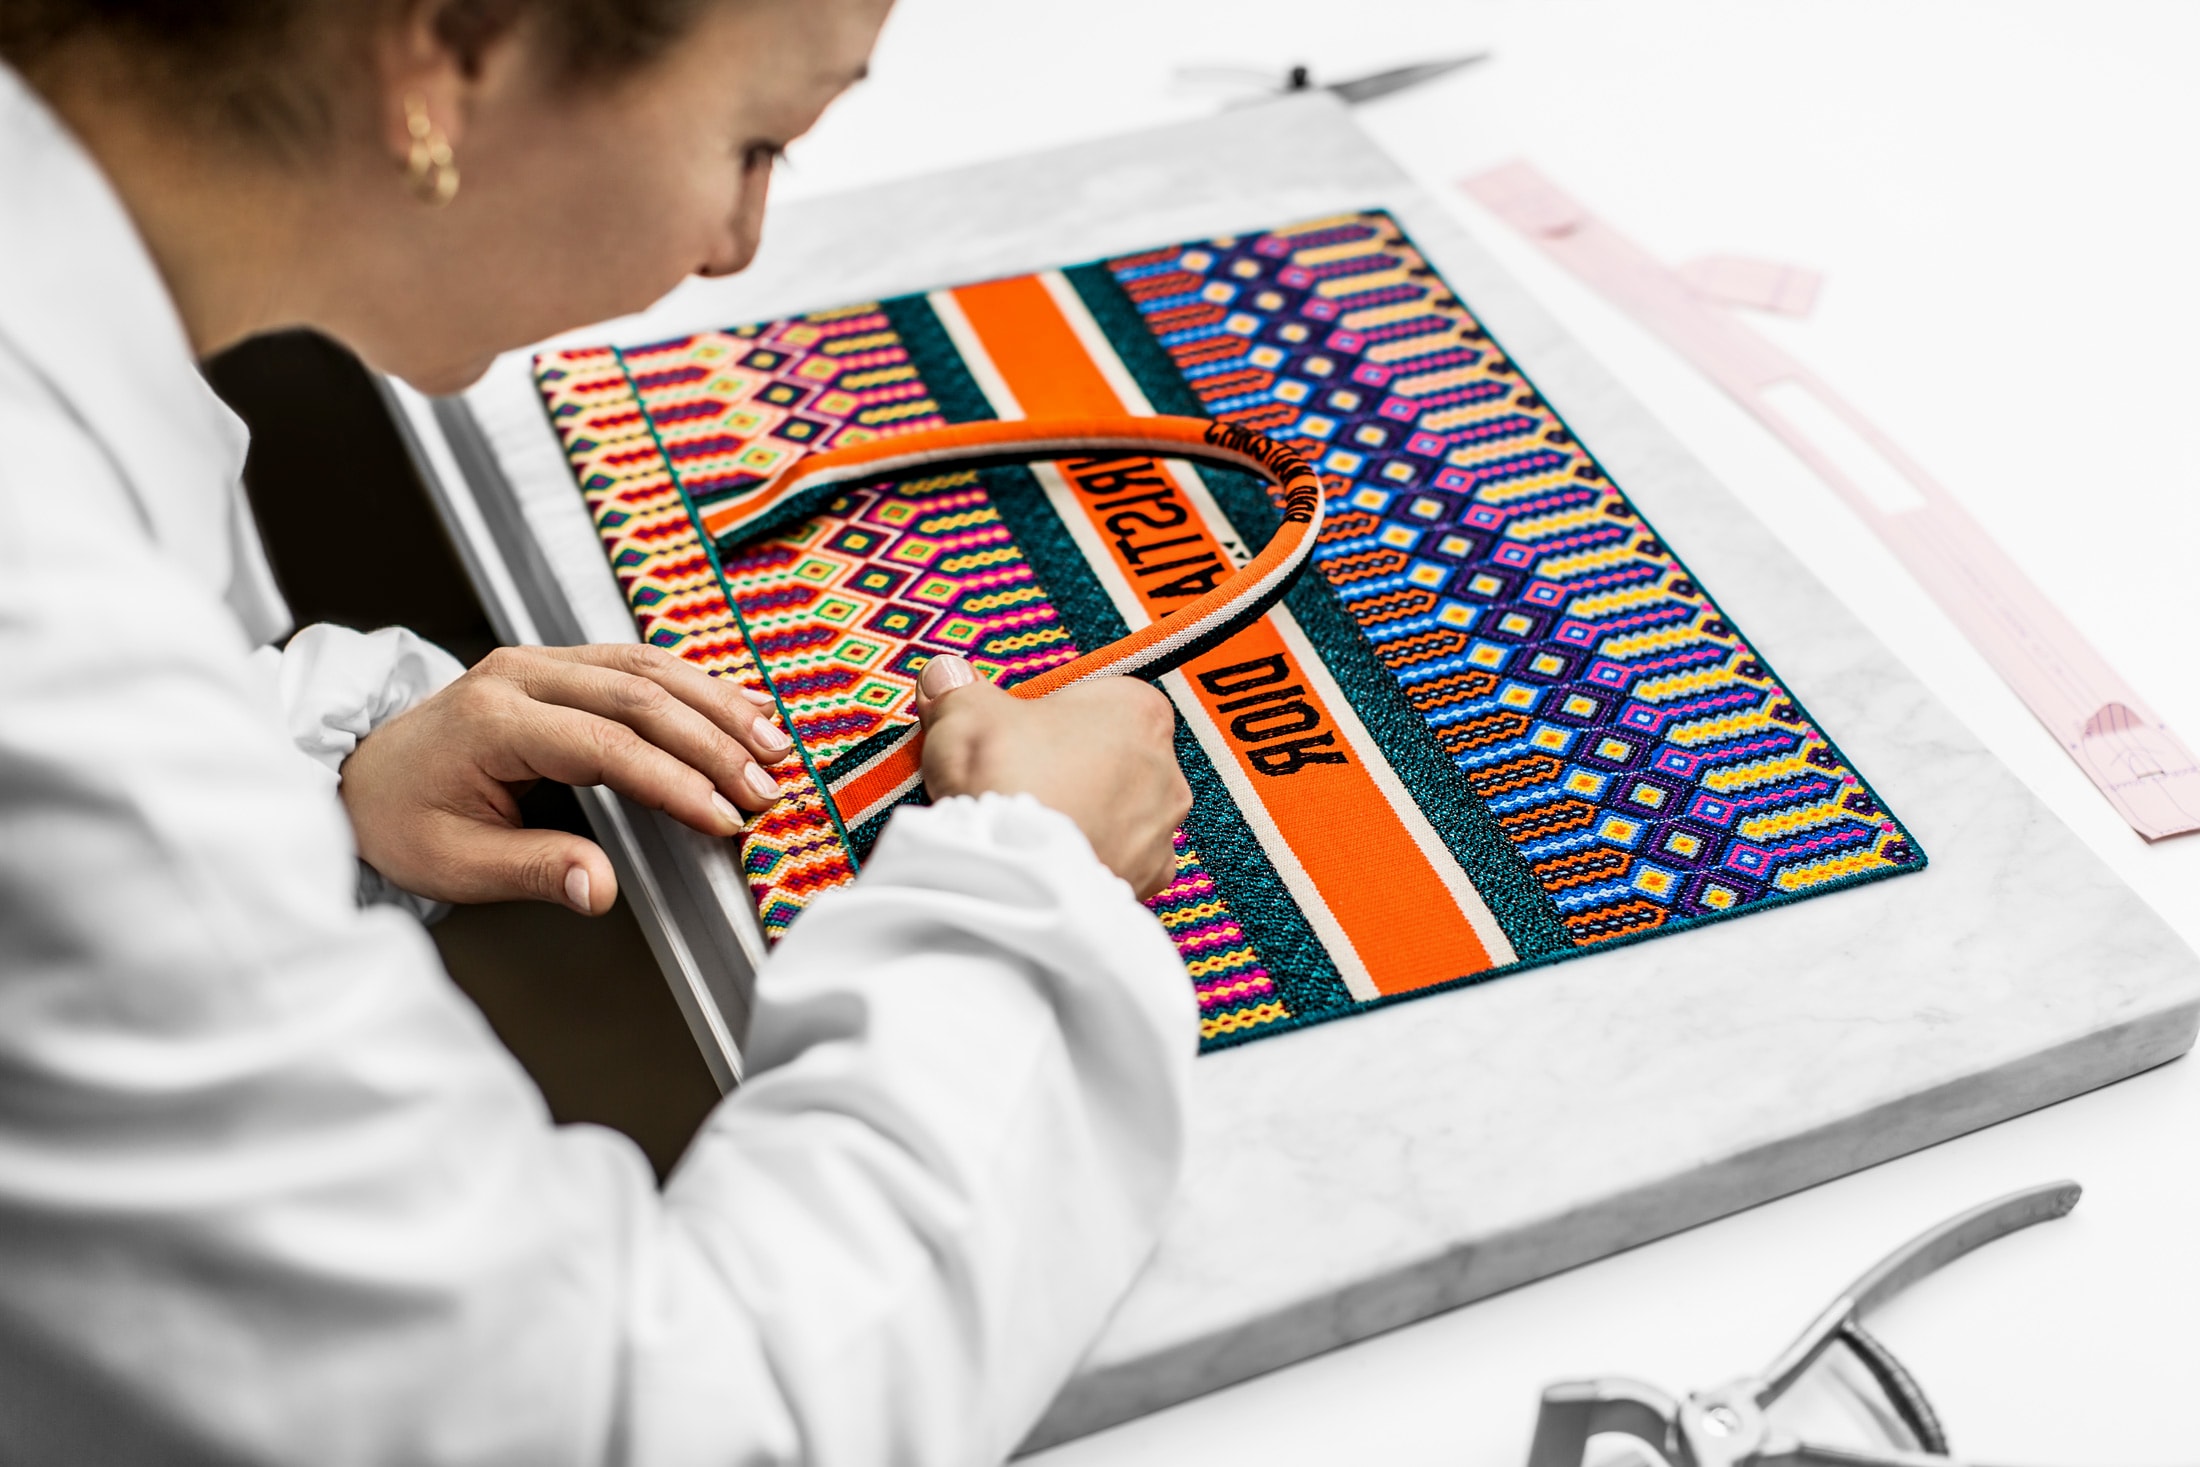 Dior's Embroidered Book Tote Bag Spring Summer Colorful Design Bright Bold Maria Grazia Chiuri